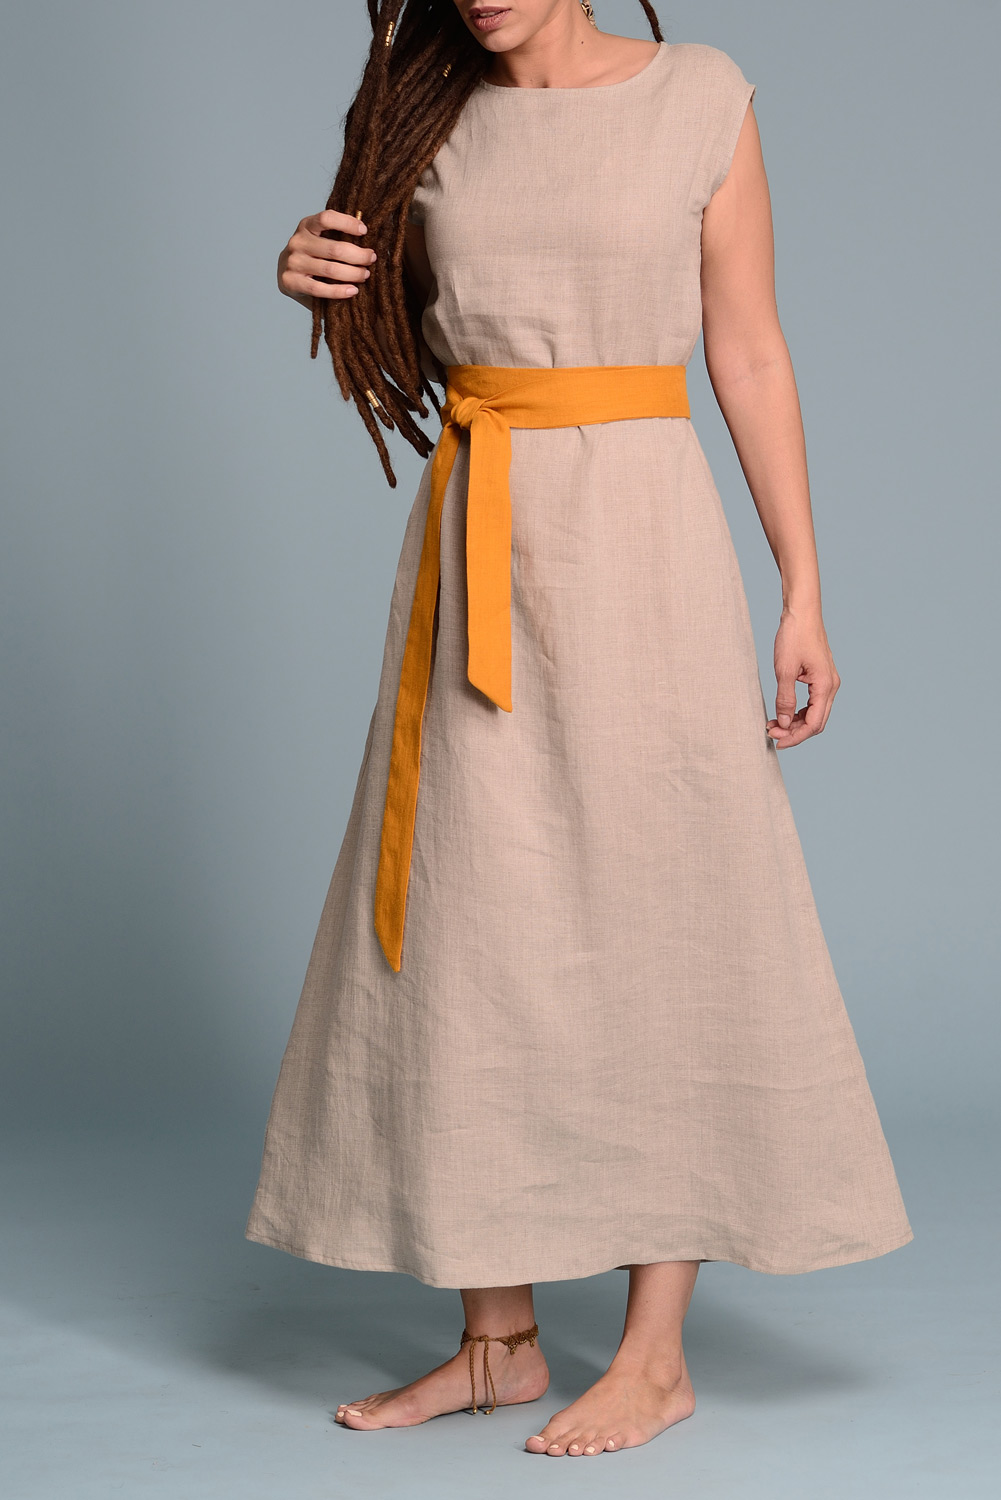 Lightweight Linen Dress LIVNA | Flax Linen Summer Dresses | Shantima